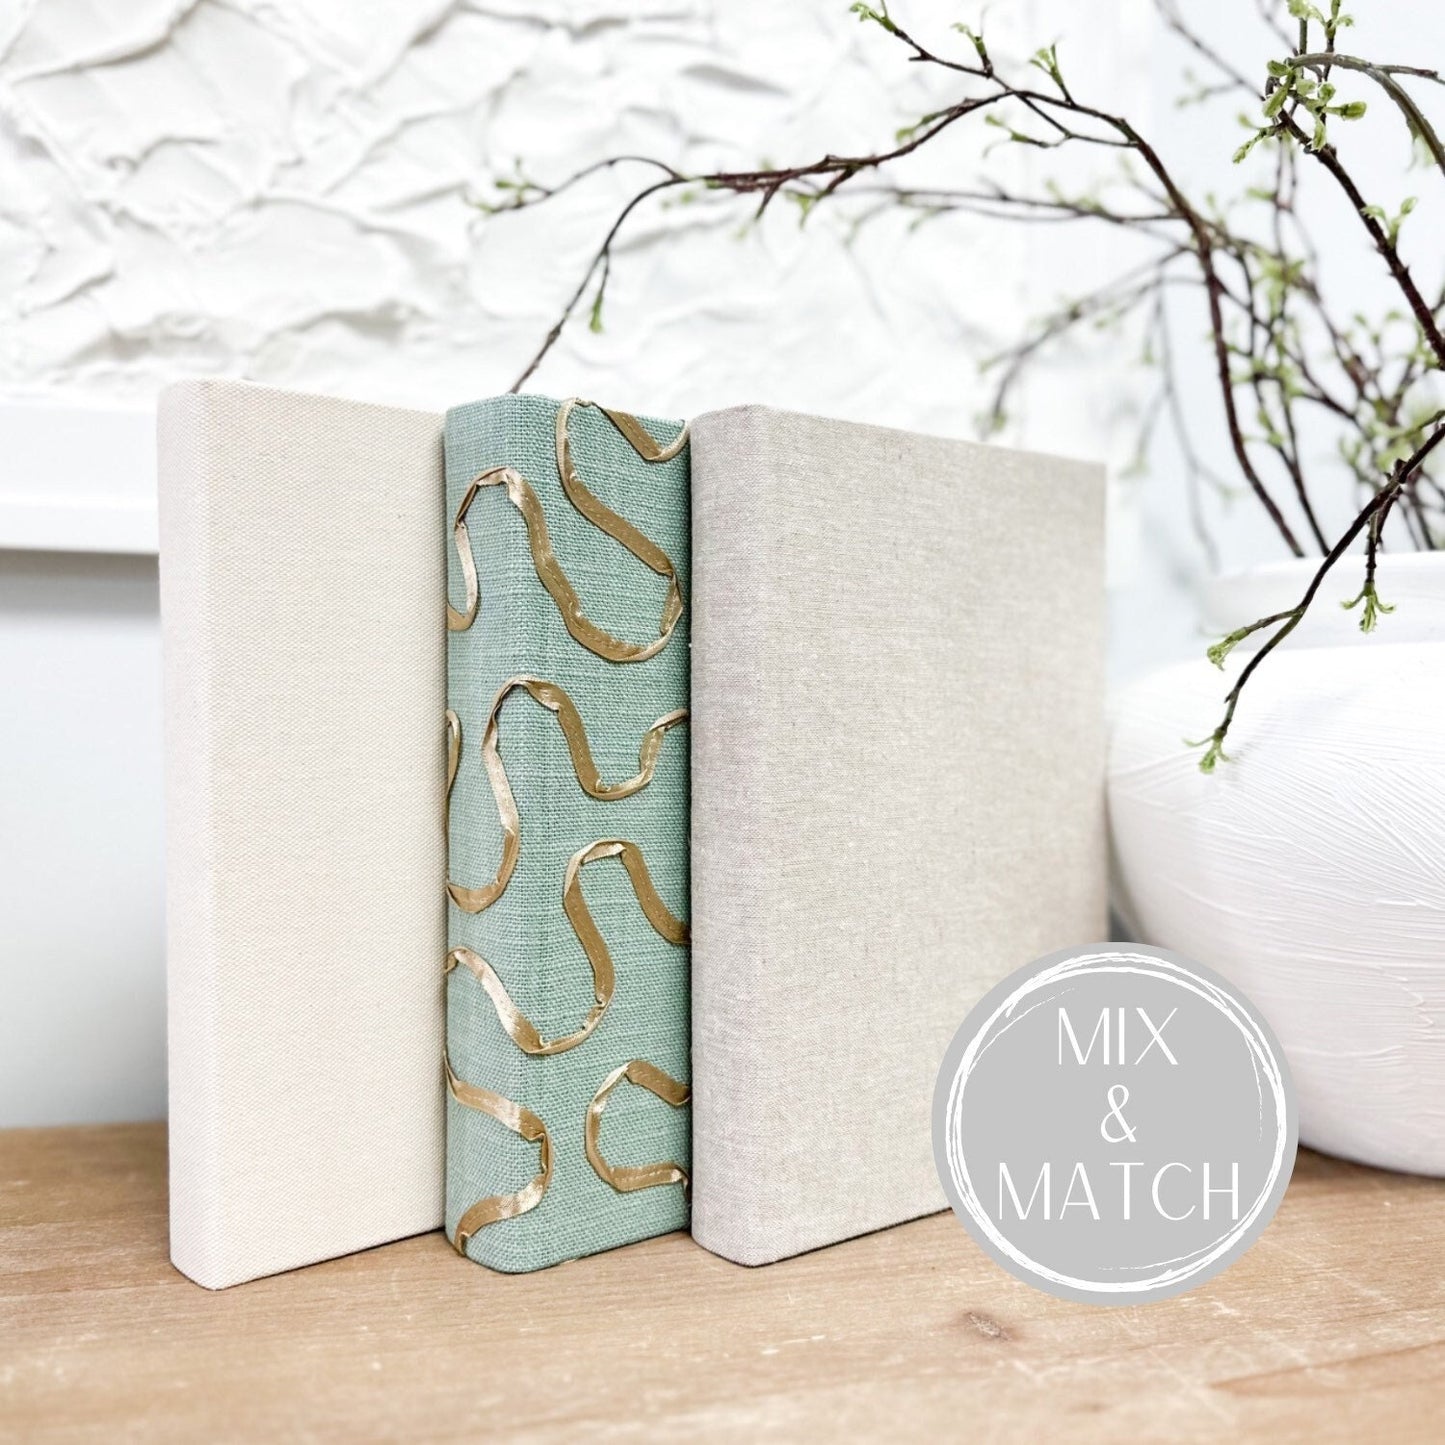 Fabric Covered Books for Shelf Decor